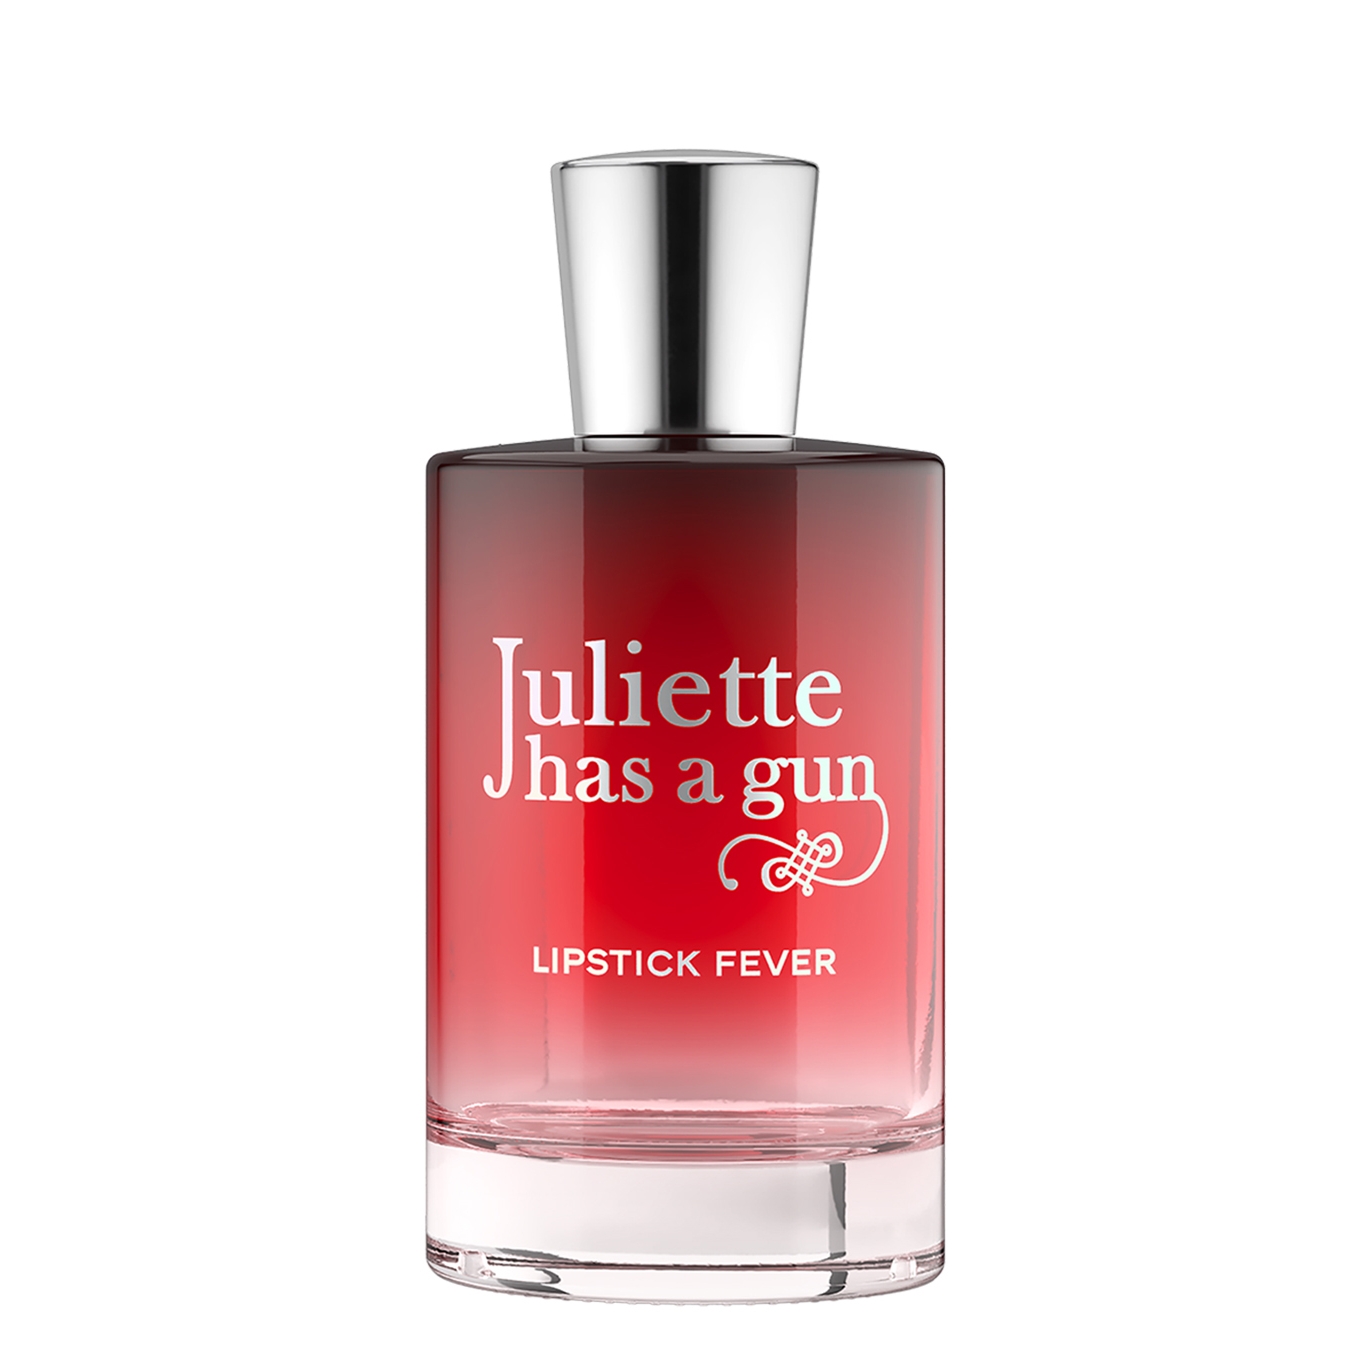 Juliette Has a Gun Lipstick Fever Eau De Parfum 100ml, Woody Notes